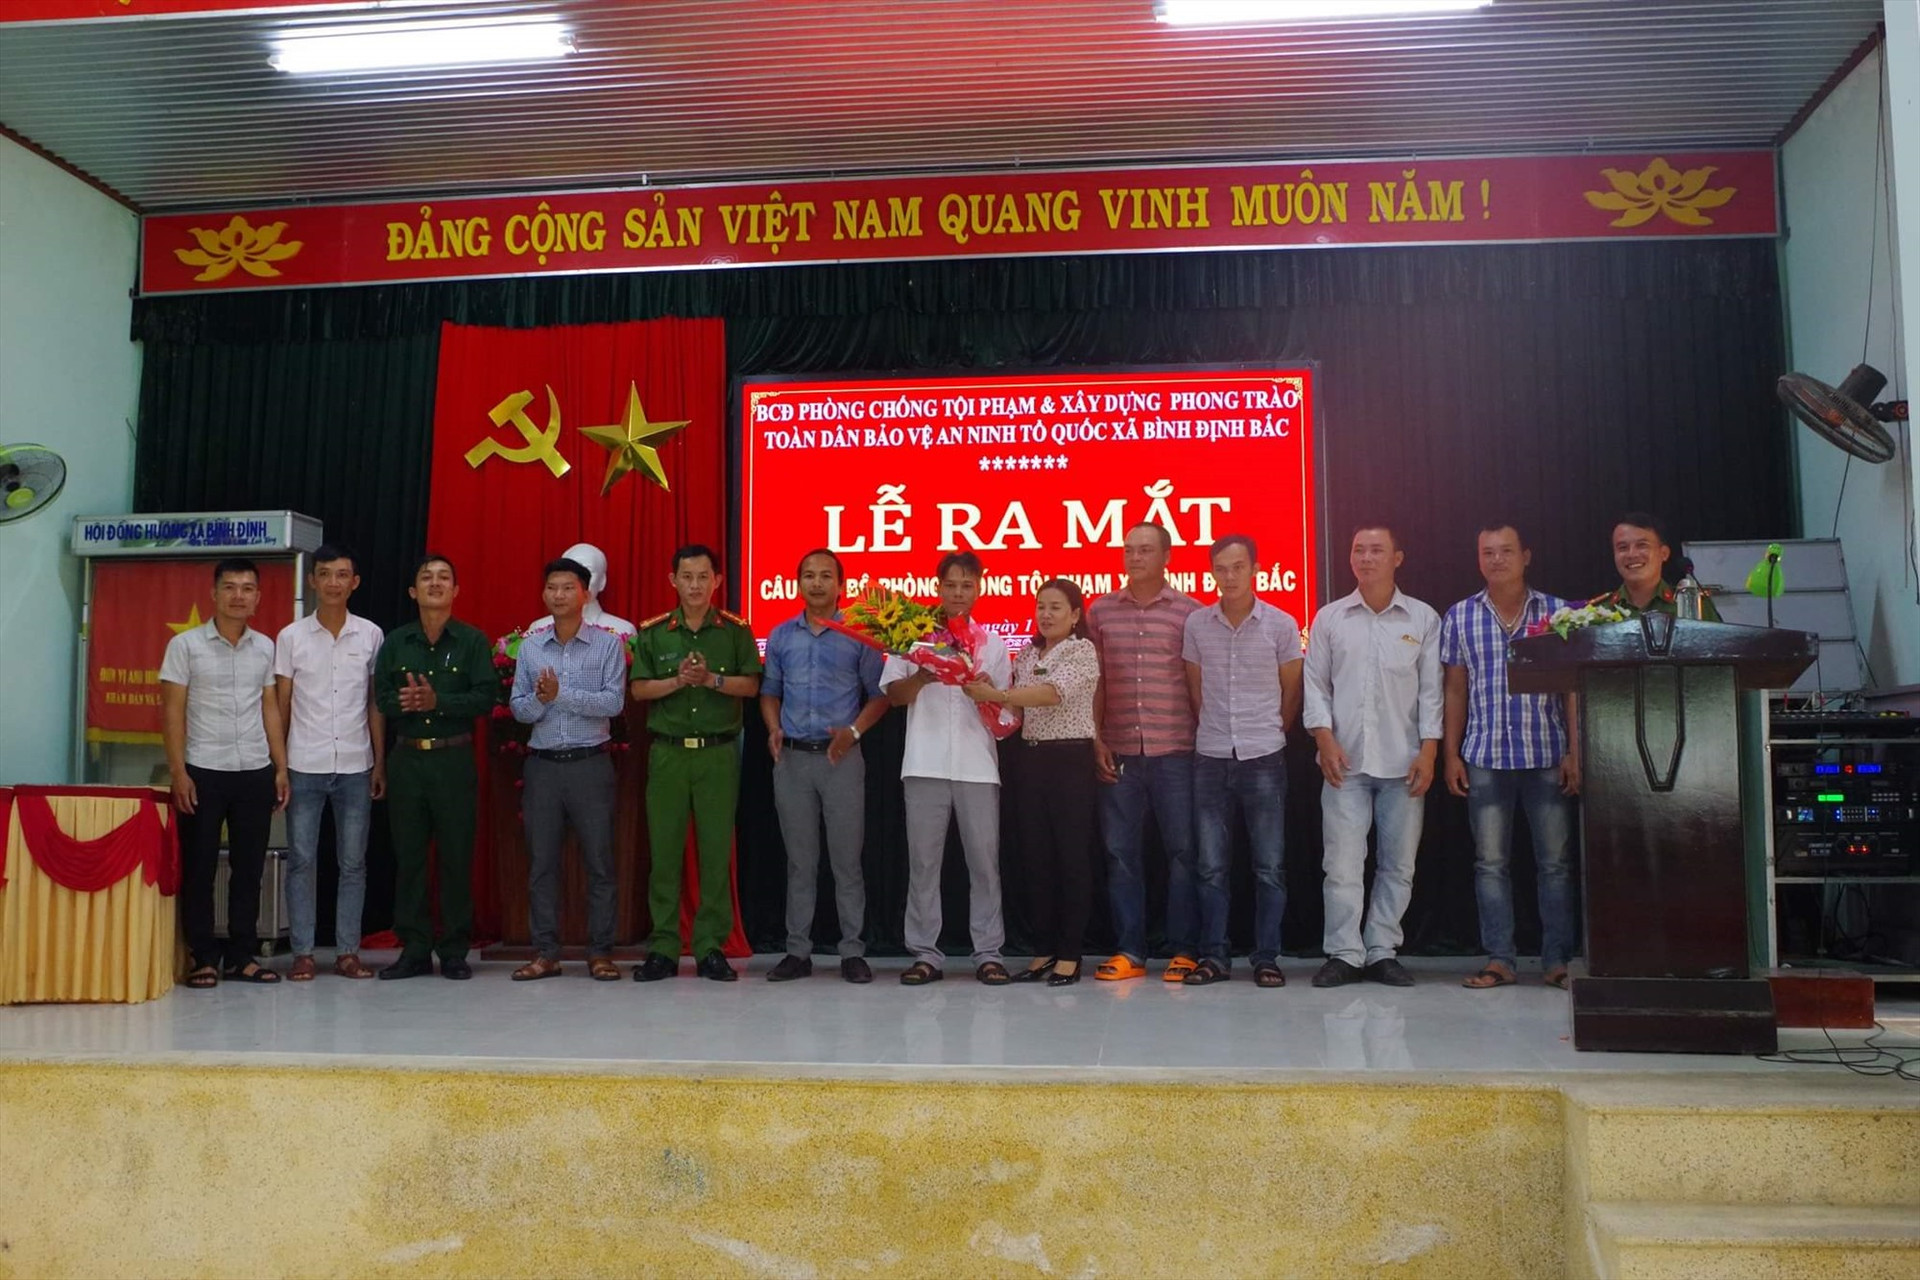 Ra mắt CLB Phòng chống tội xã Bình Định Bắc. Ảnh: PV